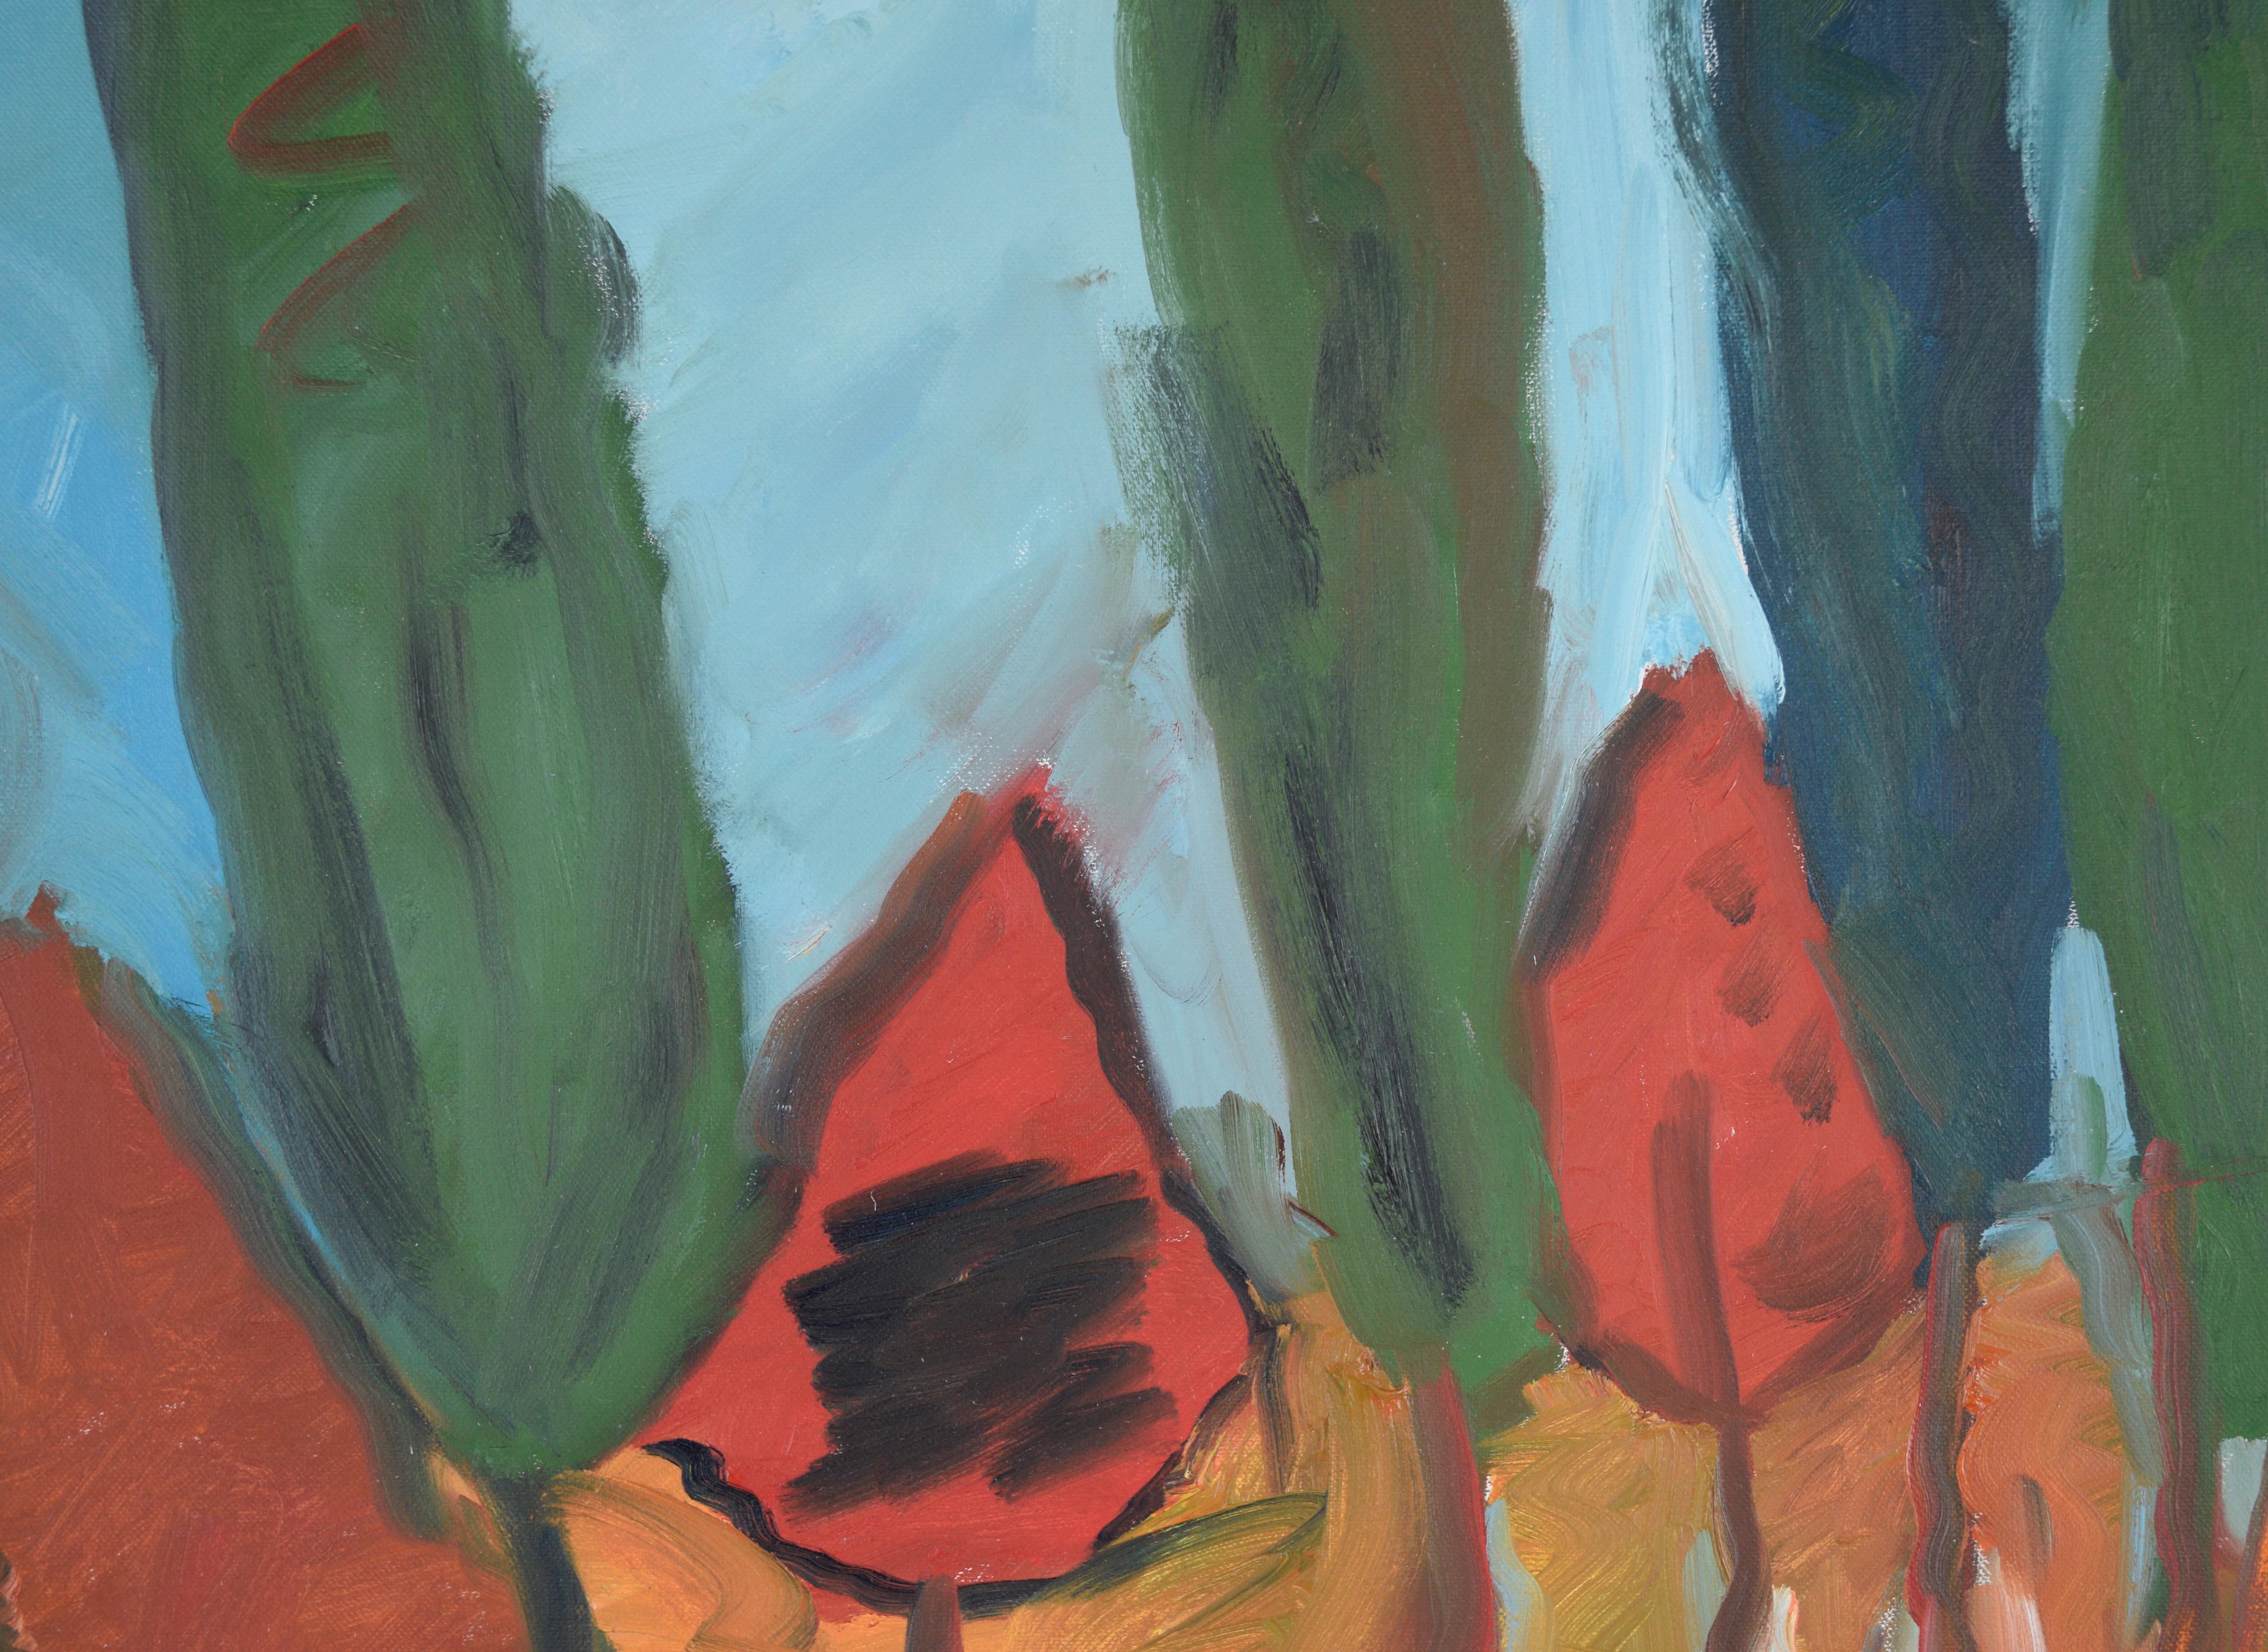 Barn by the River - Paysage expressionniste - Huile sur toile originale de Belgique - Expressionniste Painting par Gloria Takla